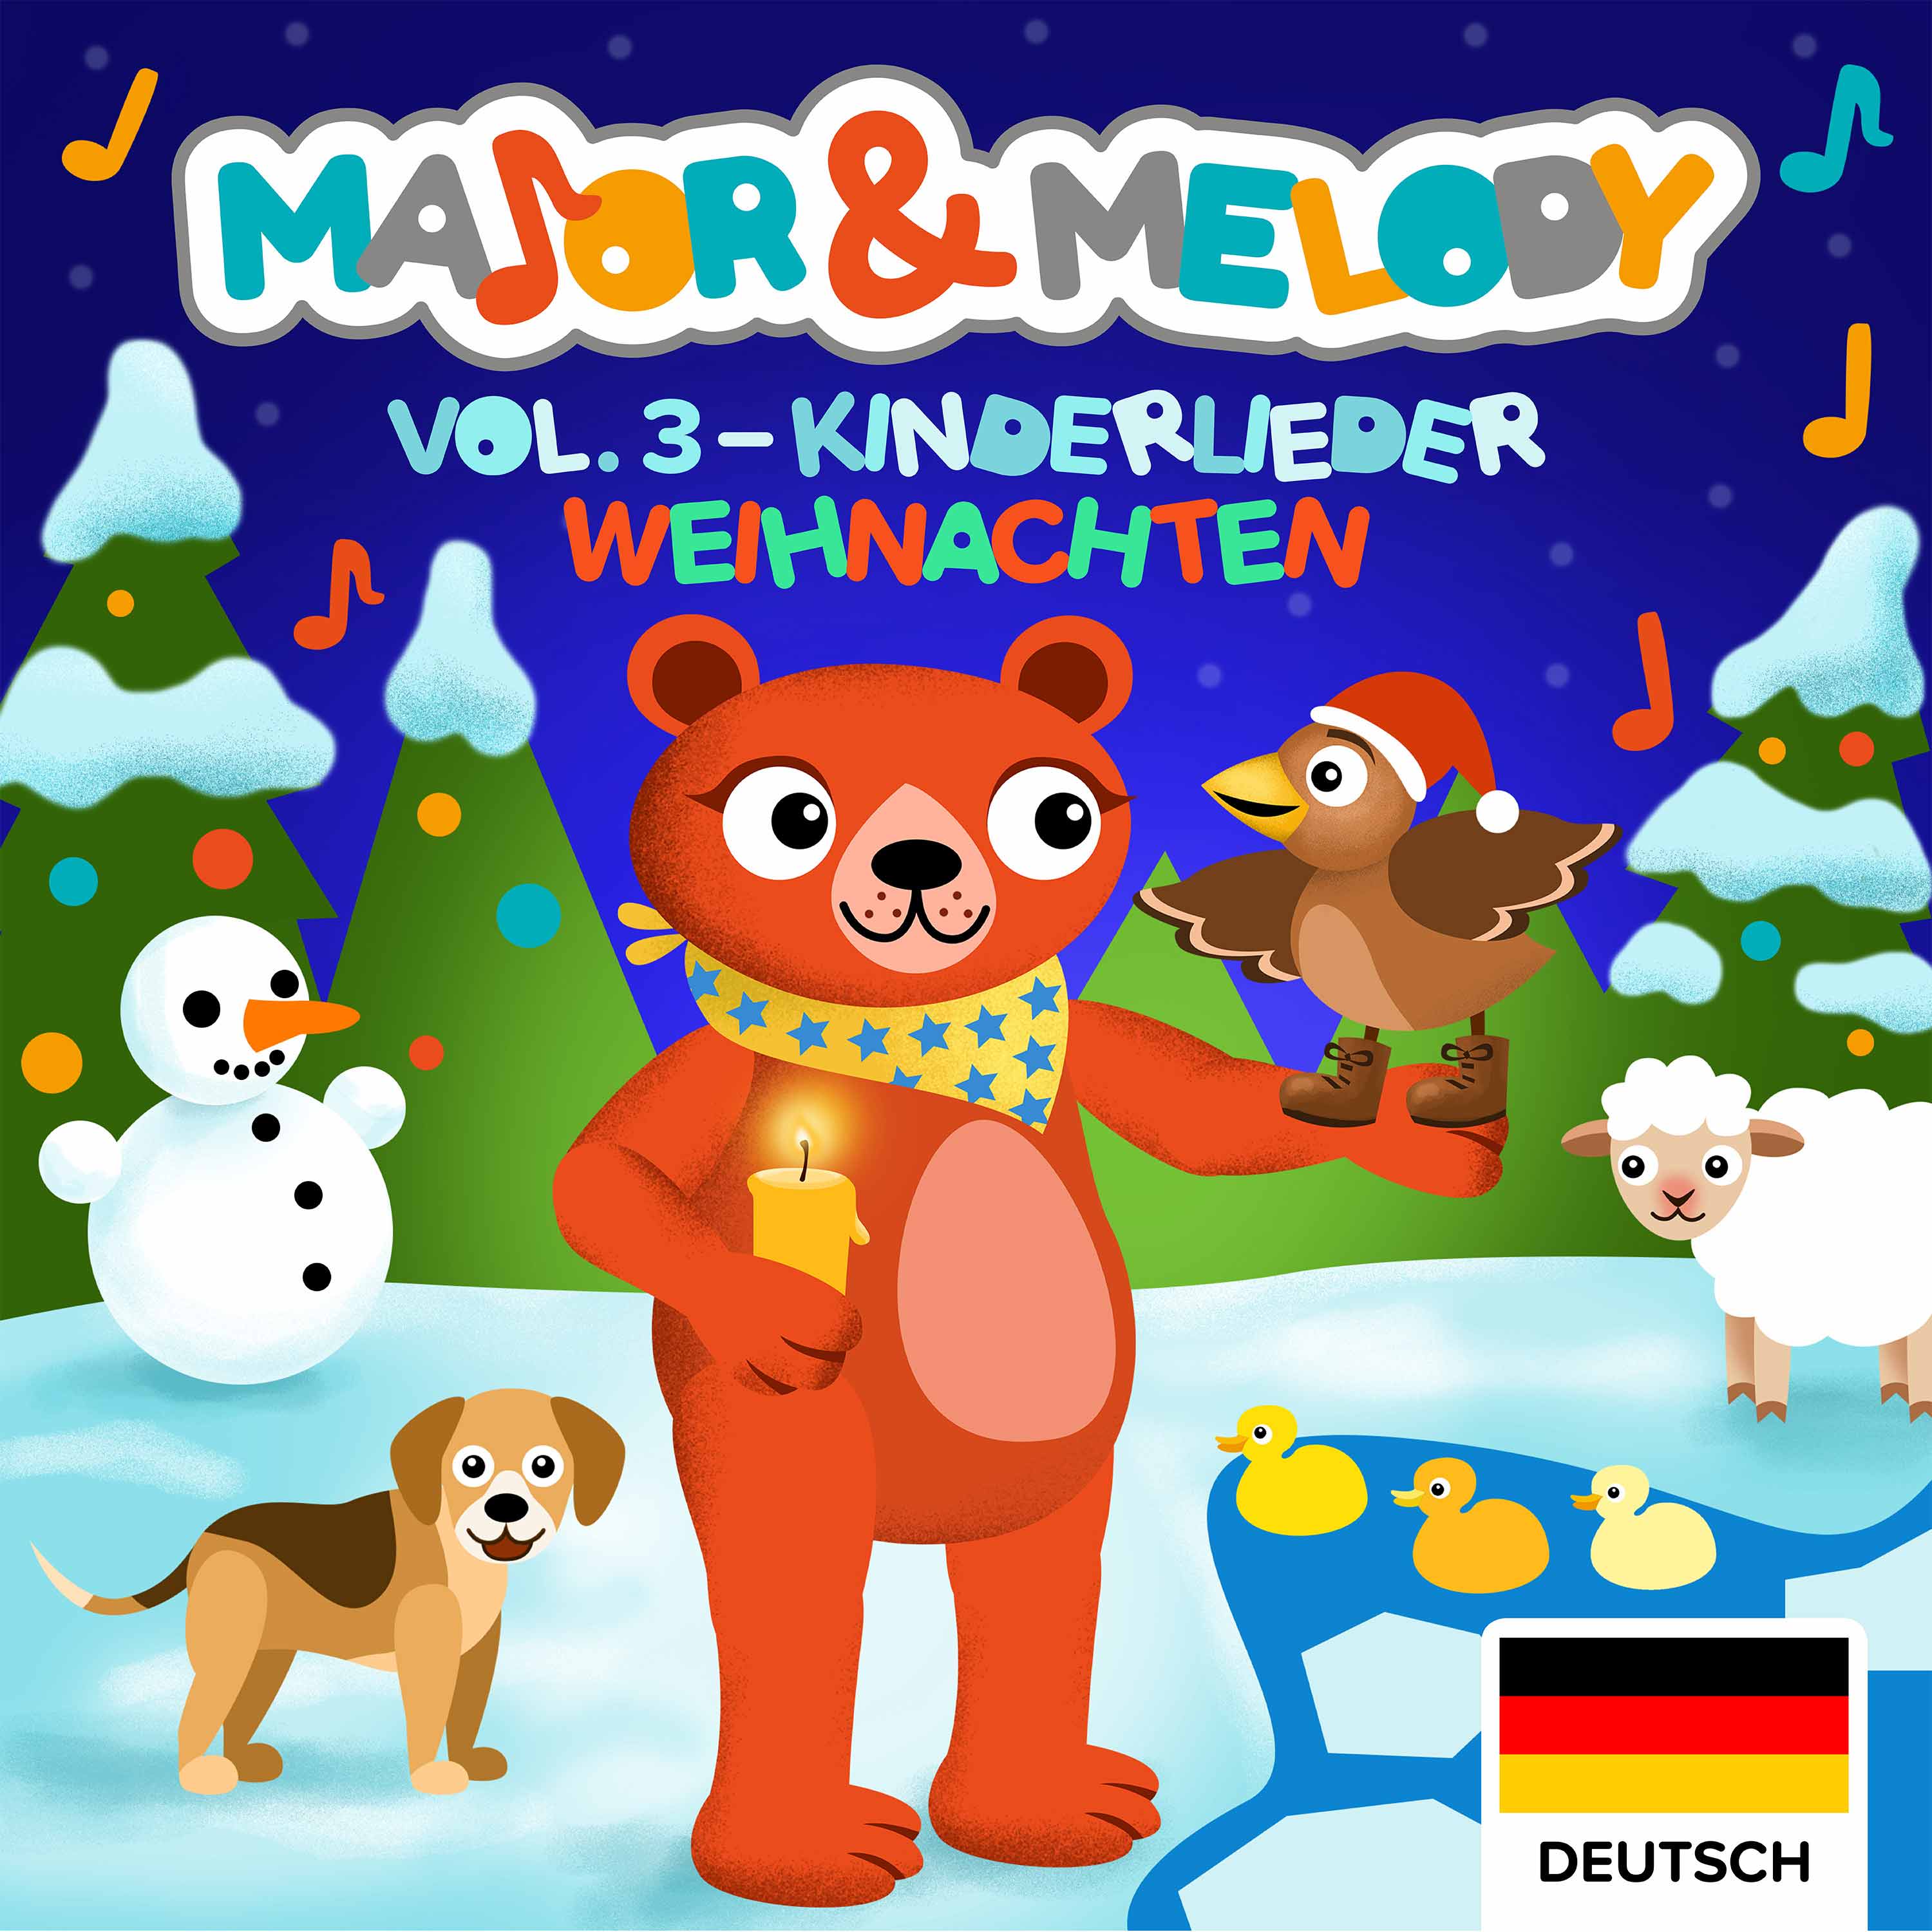 Major & Melody: Kinderlieder - Weihnachten